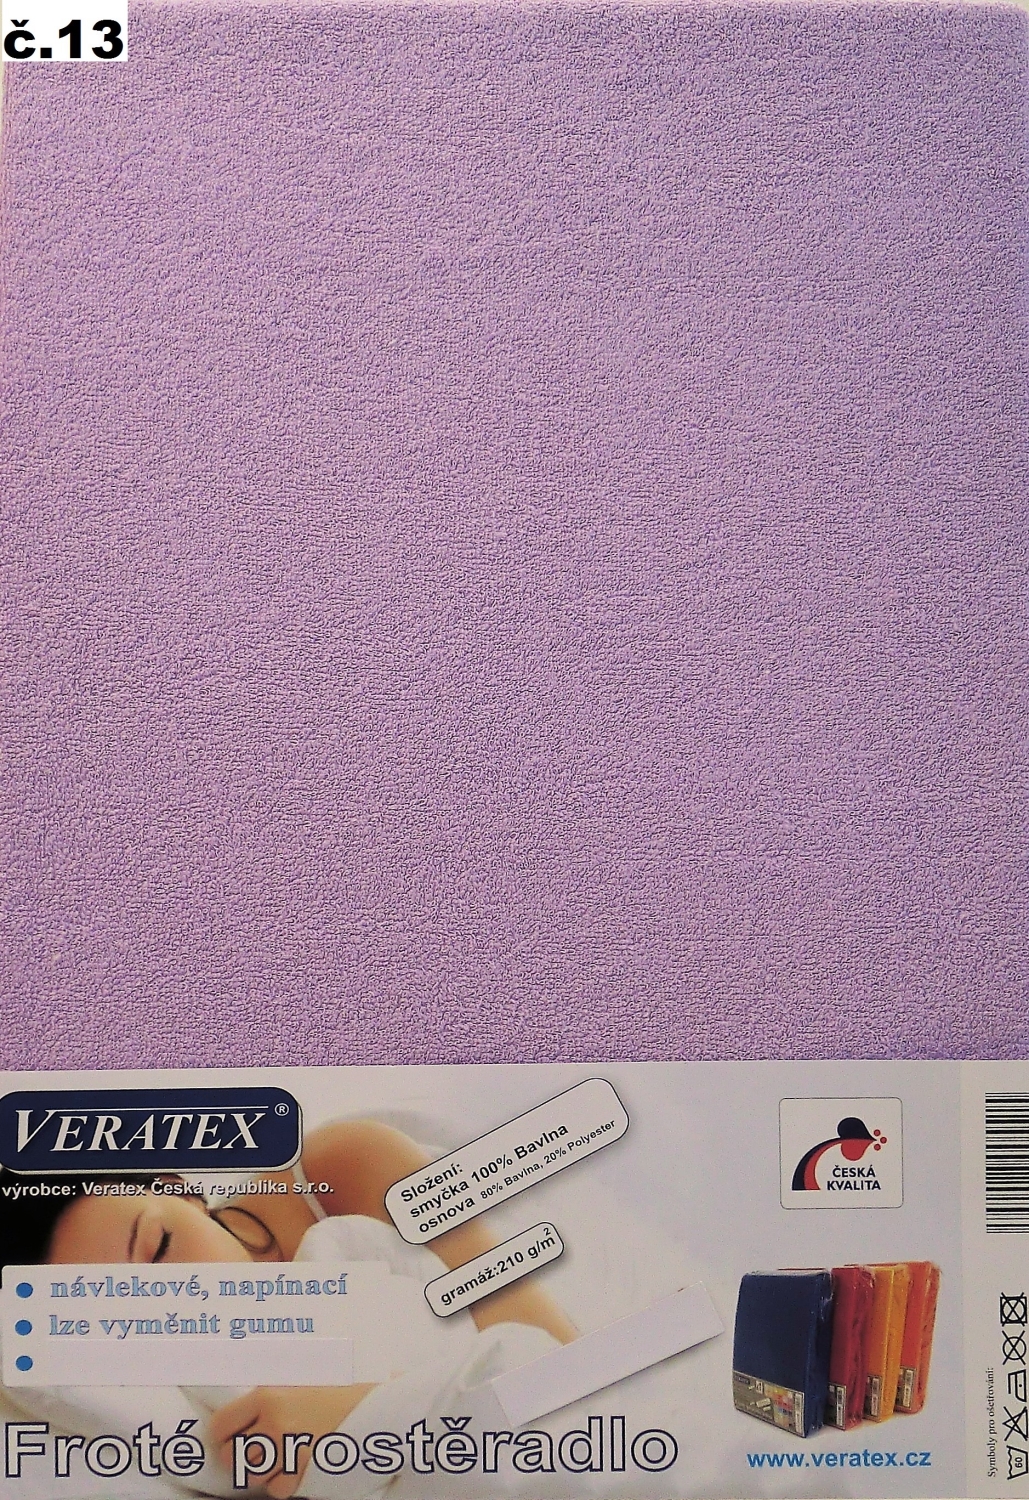 Veratex Froté prostěradlo 90 x 220 /16 cm (č.13-fialková)